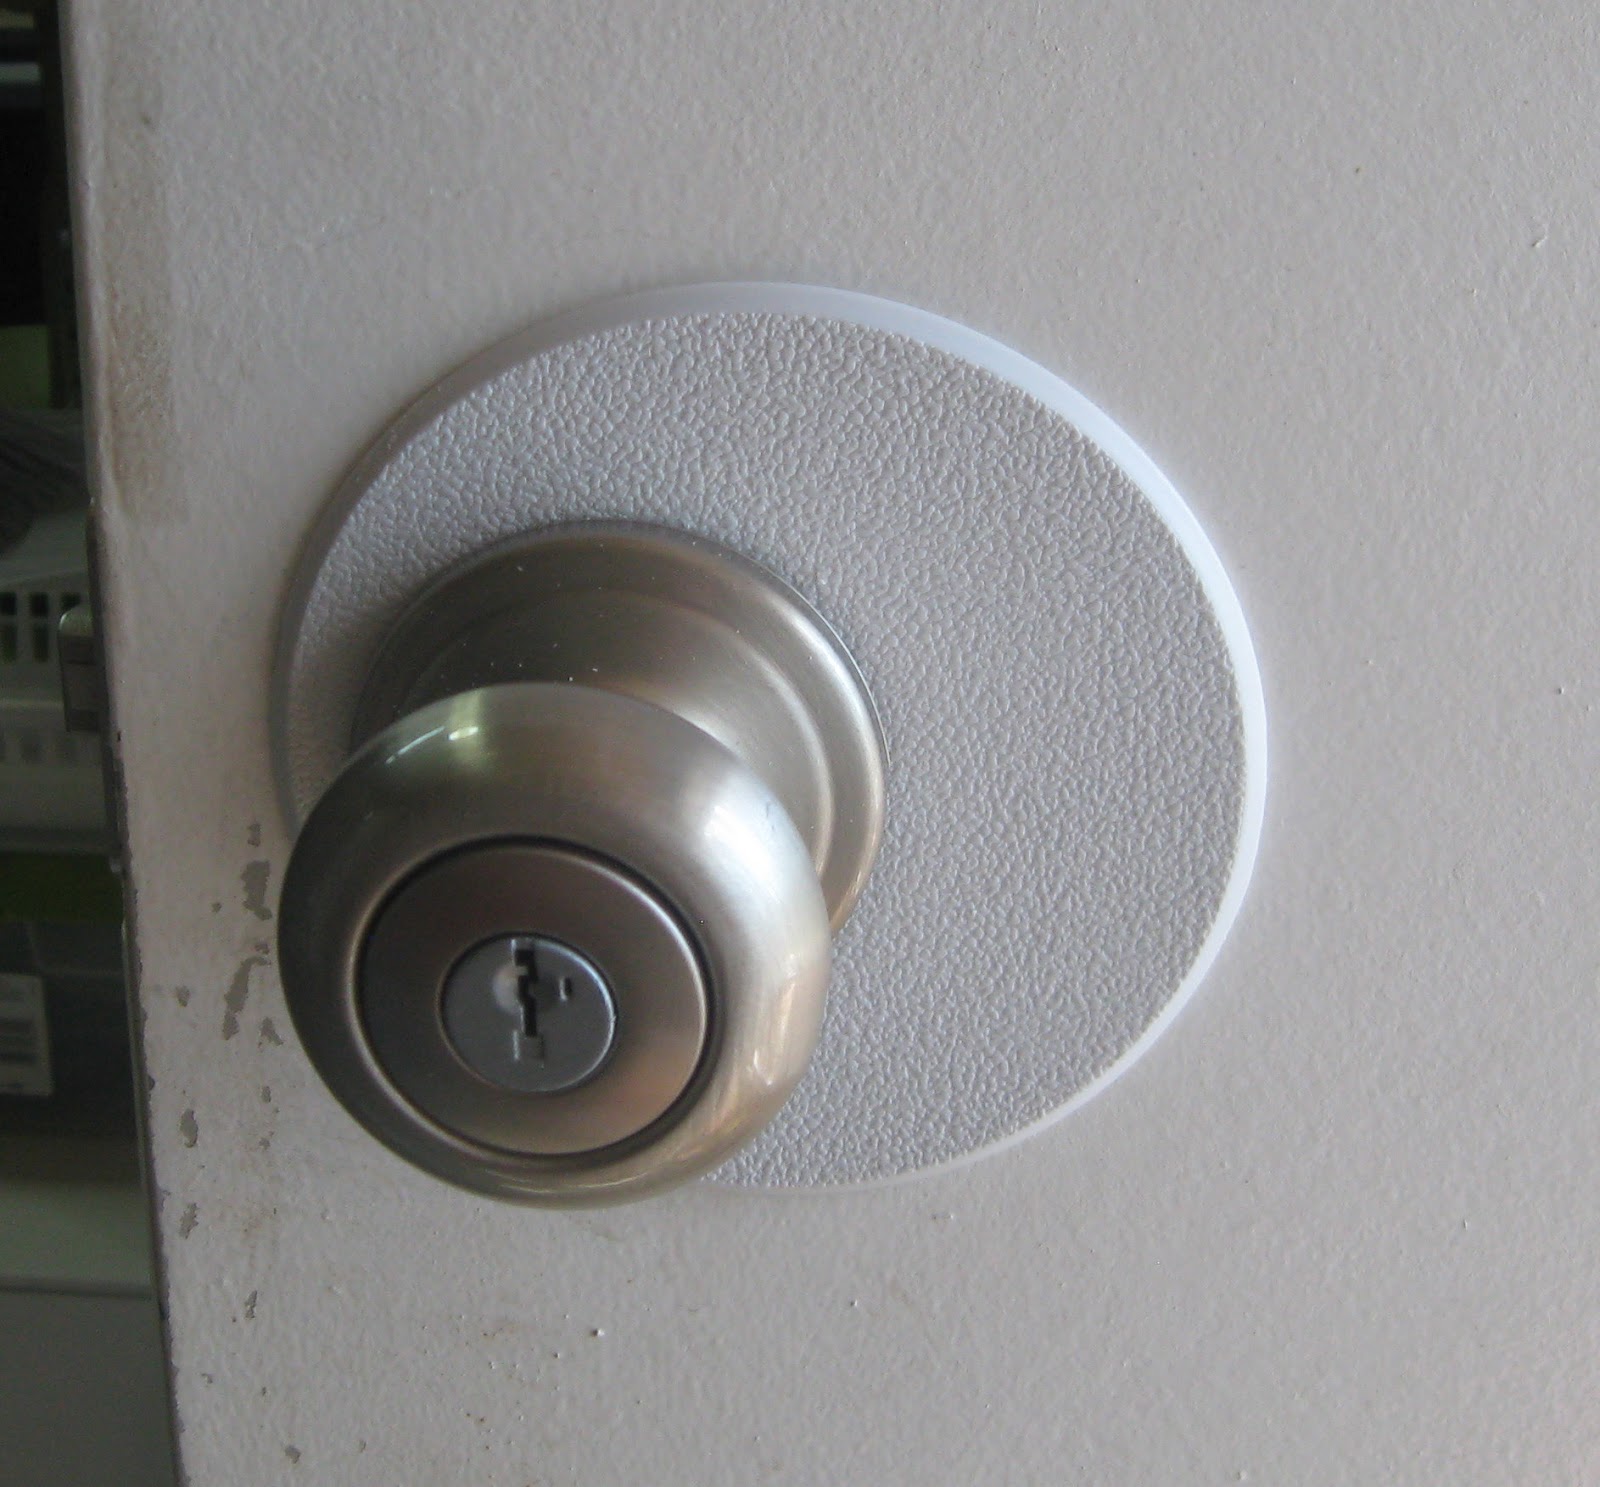 new door knobs photo - 5